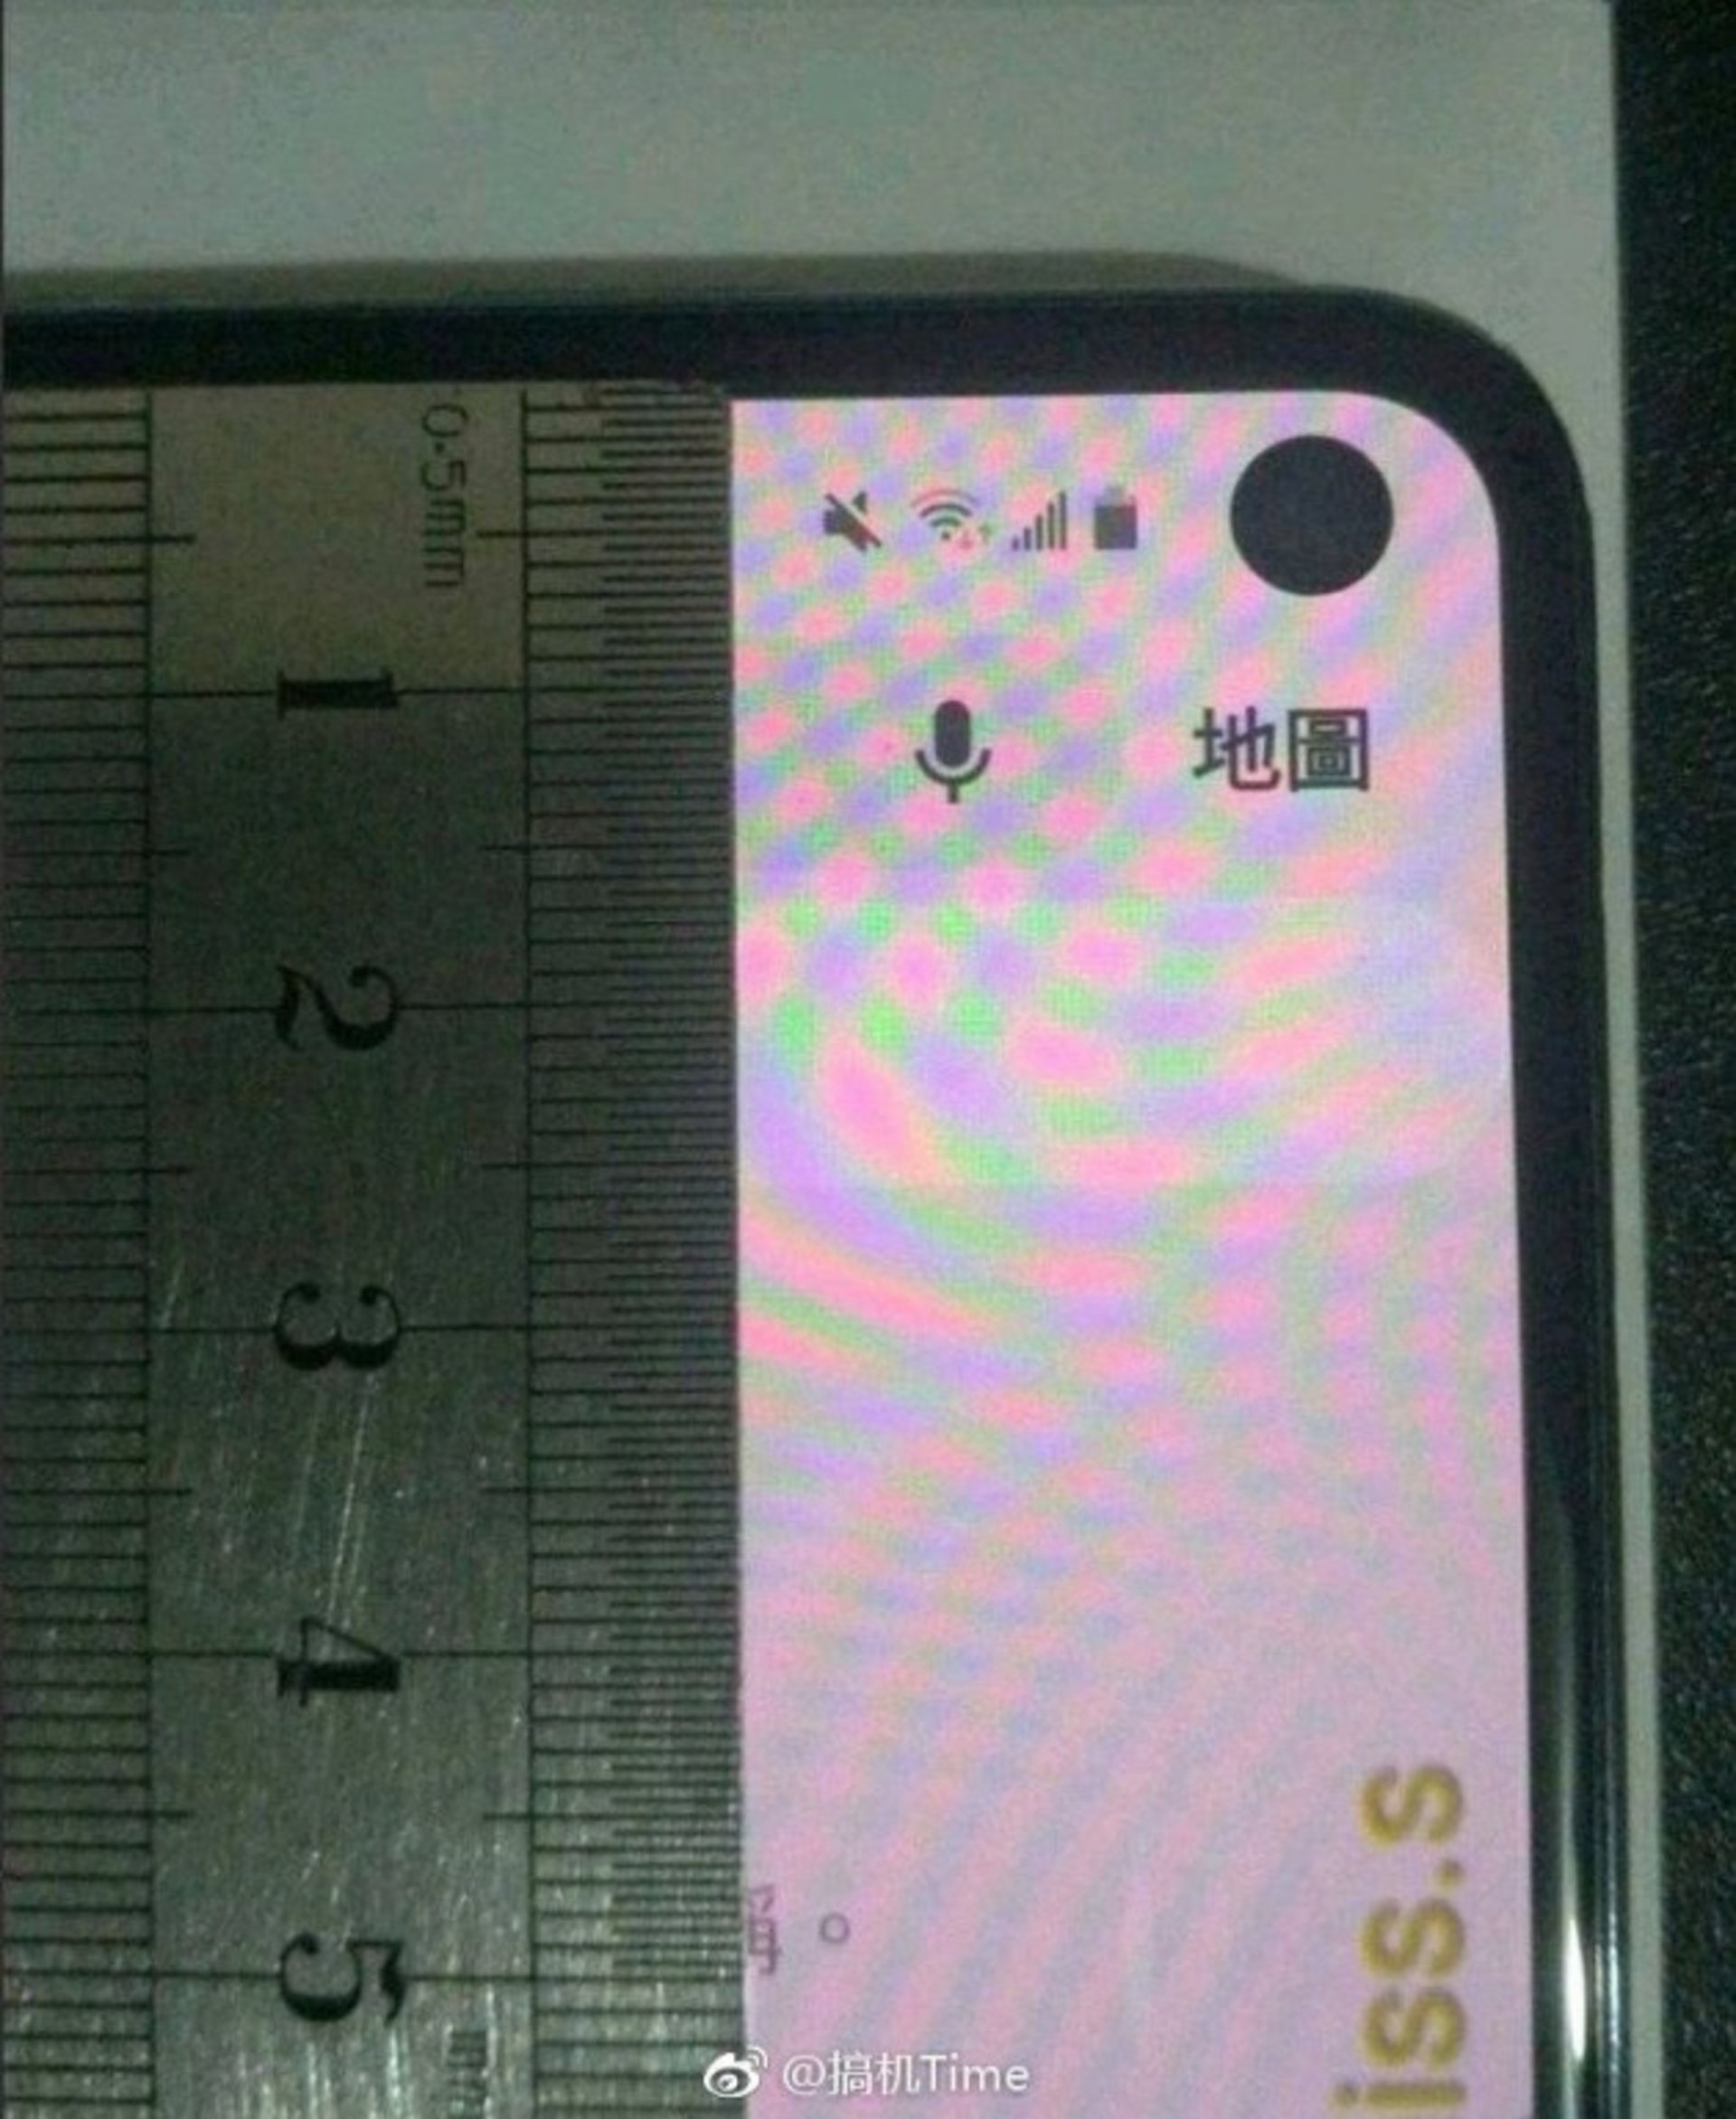 گلکسی اس 10 ای سامسونگ / Samsung Galaxy S10e